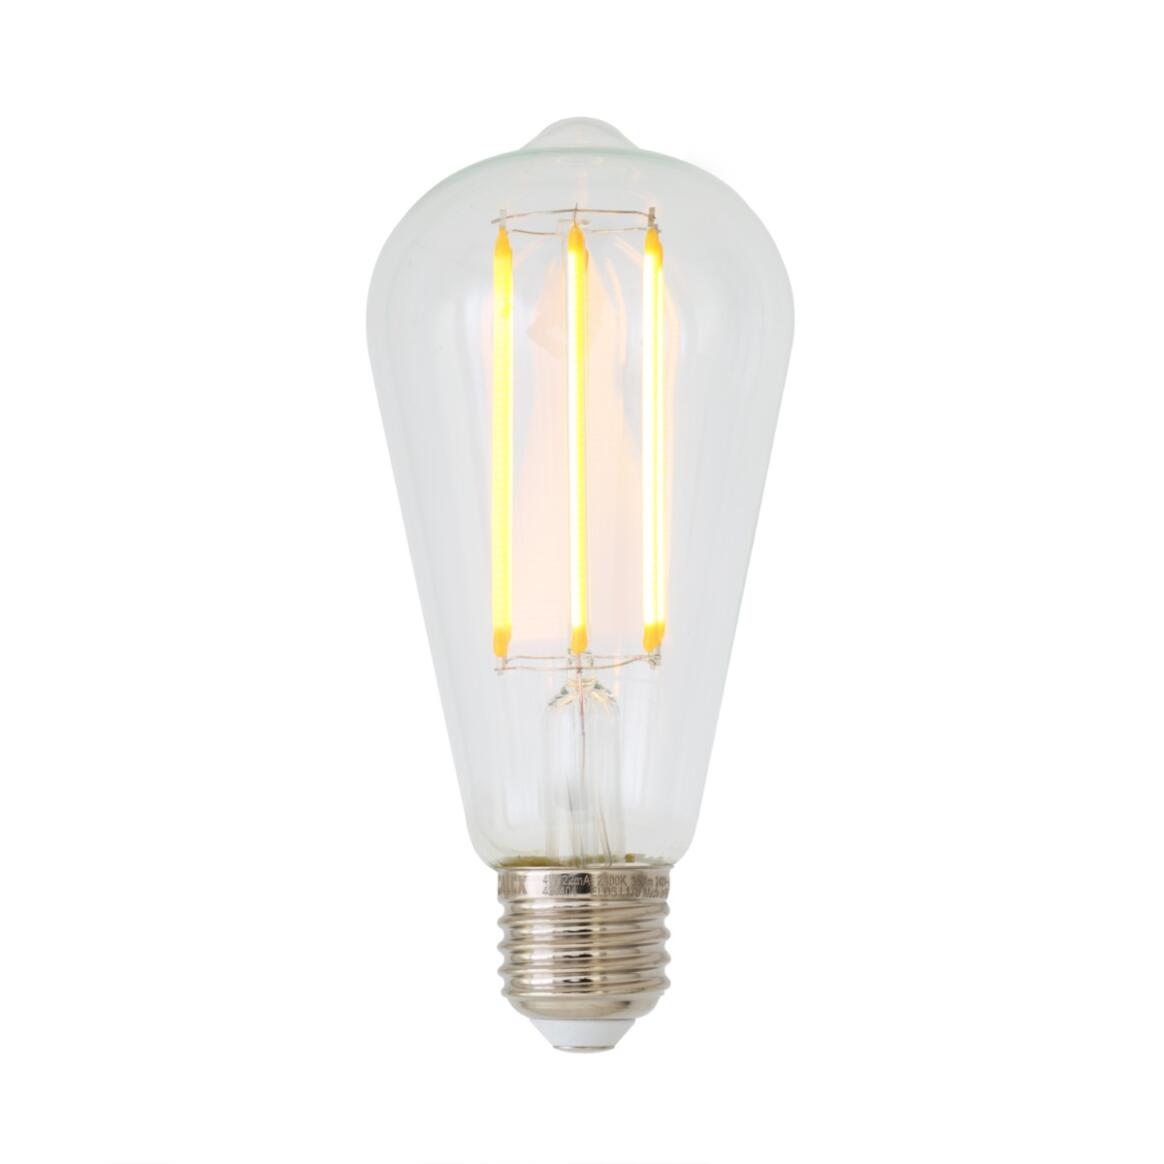 Ampoule LED à filament en forme de goutte d'eau variable d'intensité E27 4W 2300k 350lm 14cm main product image